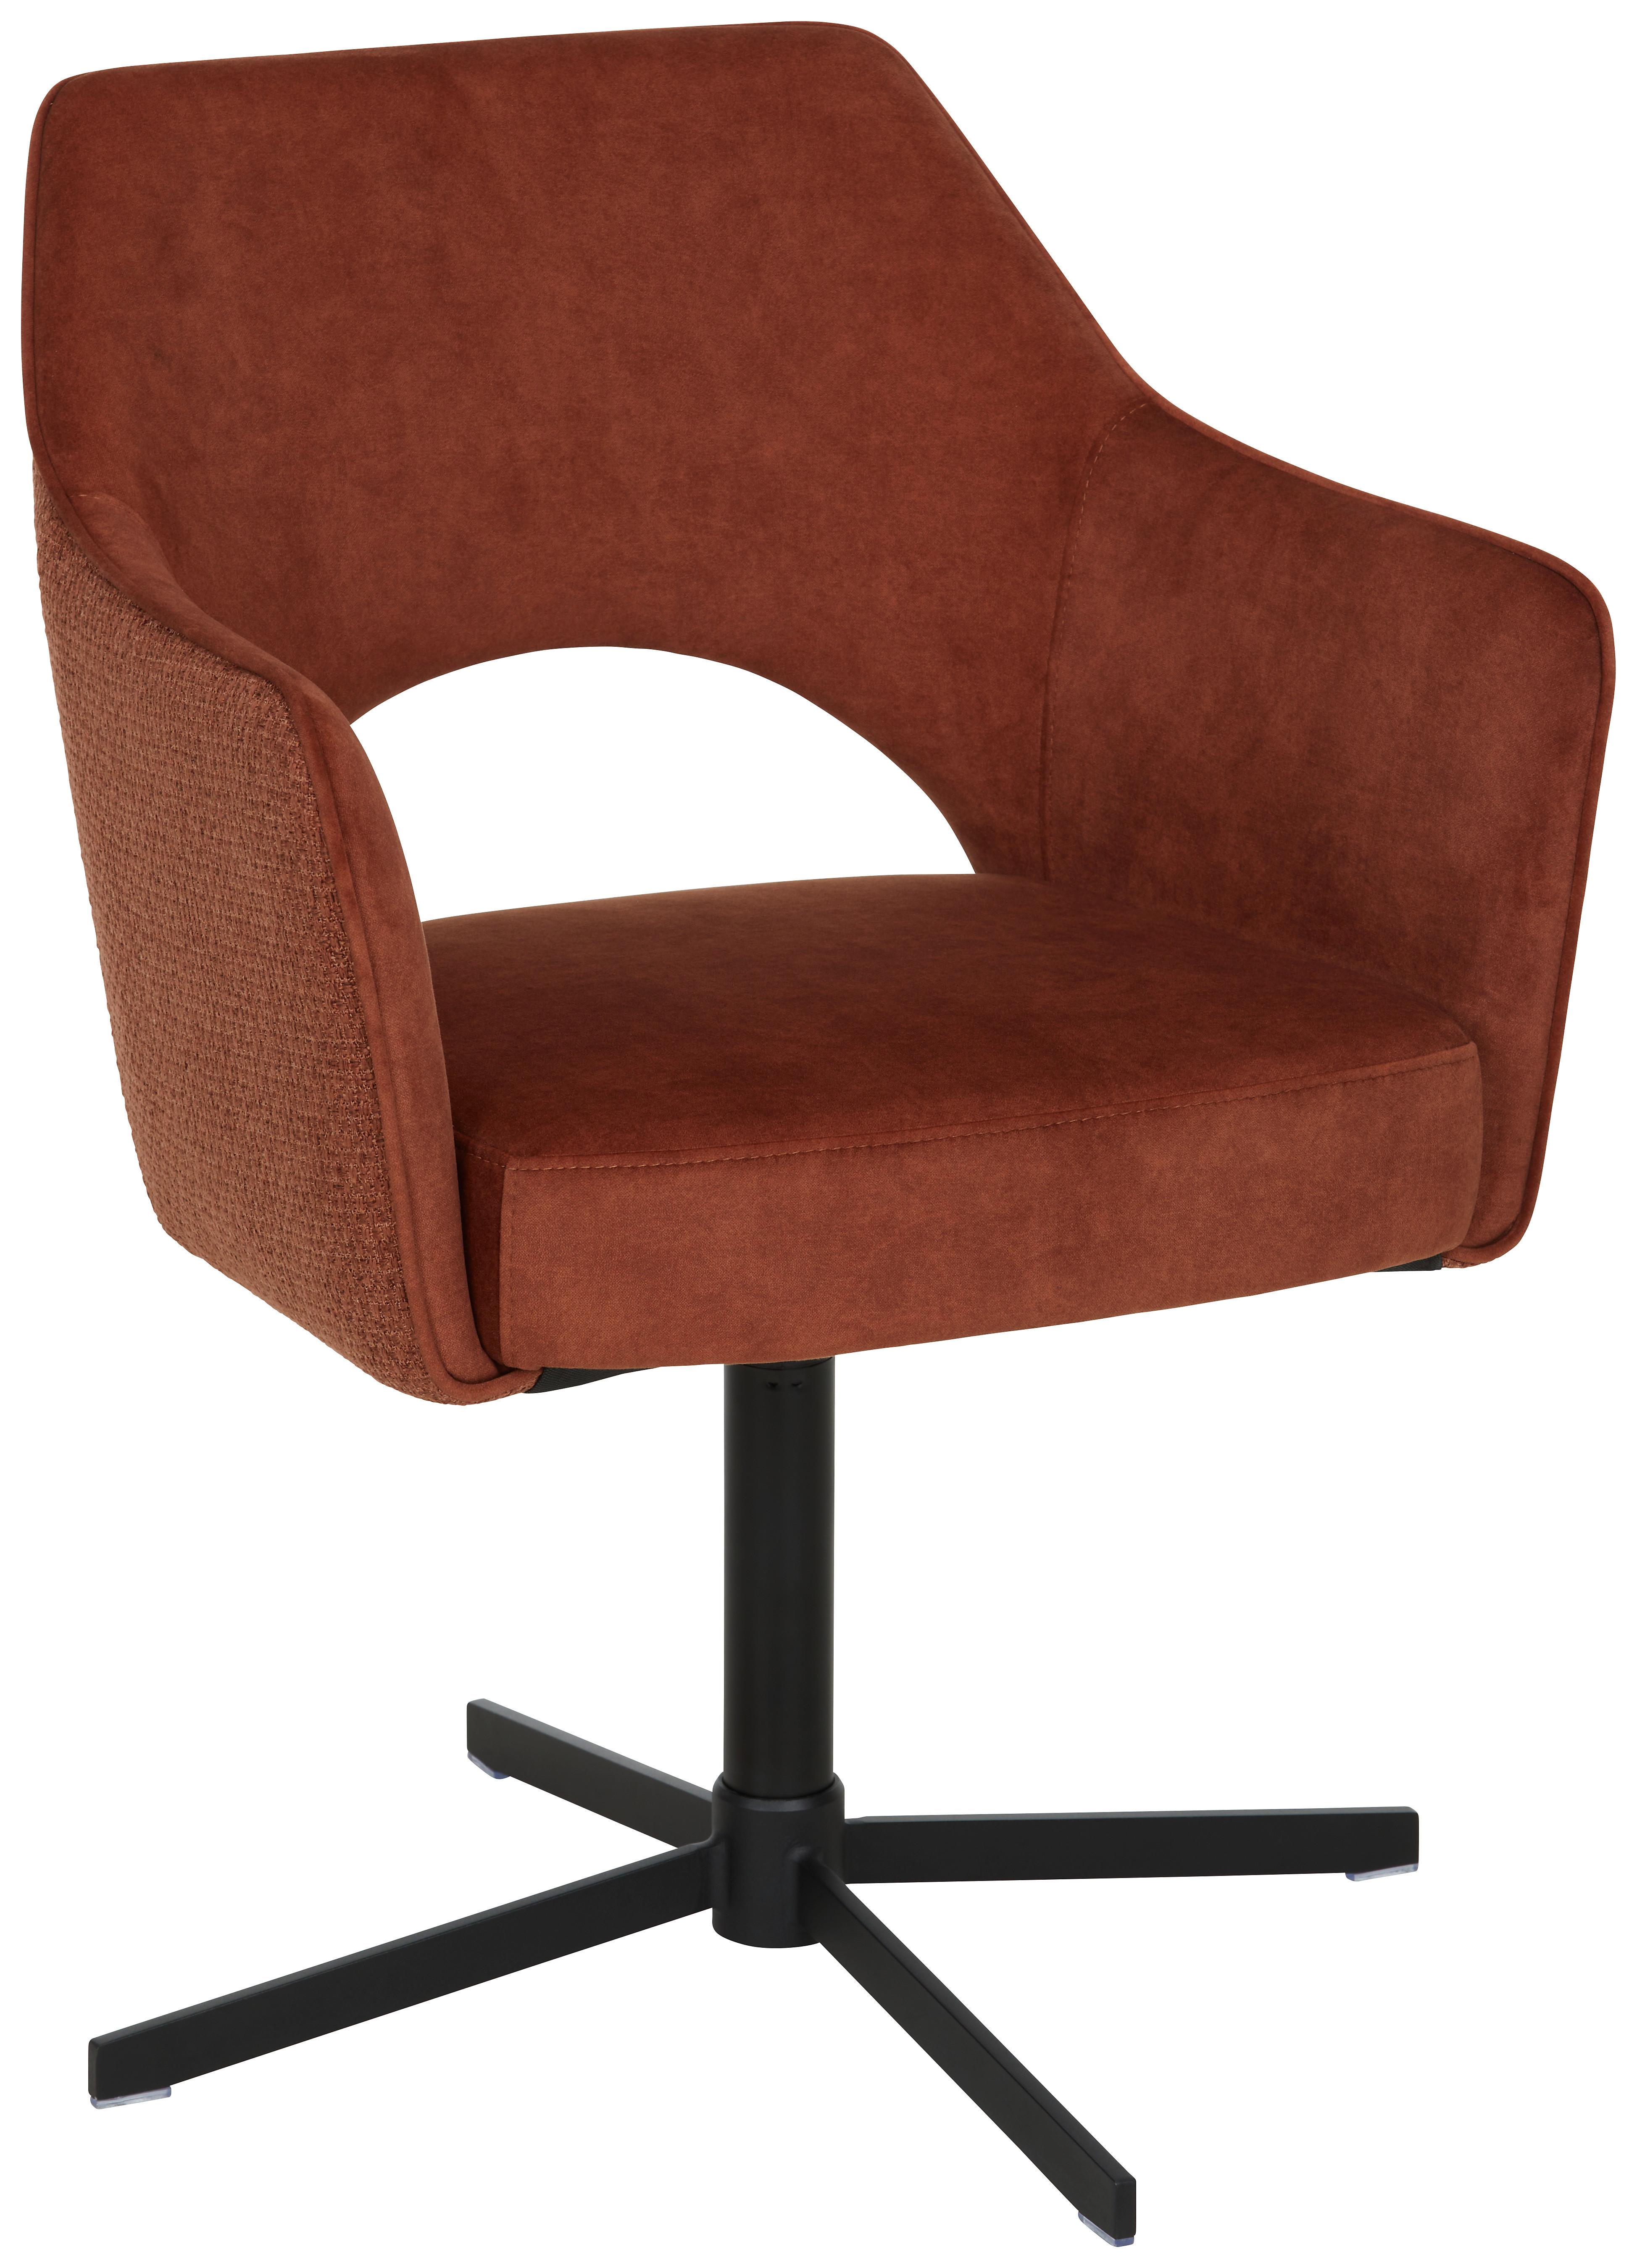 Židle S Područkami Valletta - černá/rezavá, Konvenční, kov/textil (61/85/60cm) - Premium Living